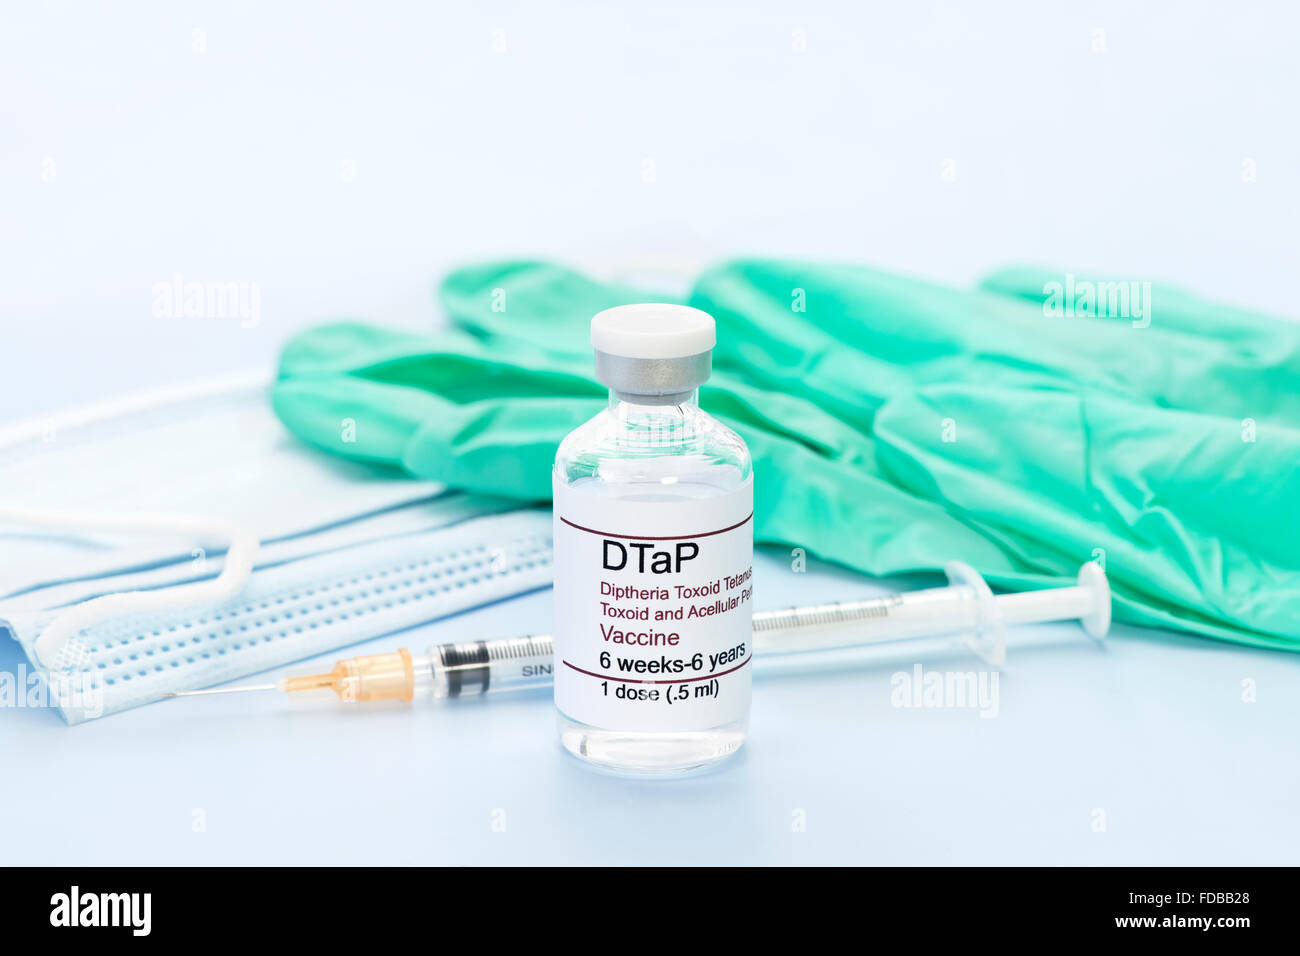 DTaP Impfstoff Fläschchen mit Handschuhe, Maske, Spritze.  Label ist fiktive (Fake) und hat keine Ähnlichkeit mit einem bekannten Produkt. Stockfoto